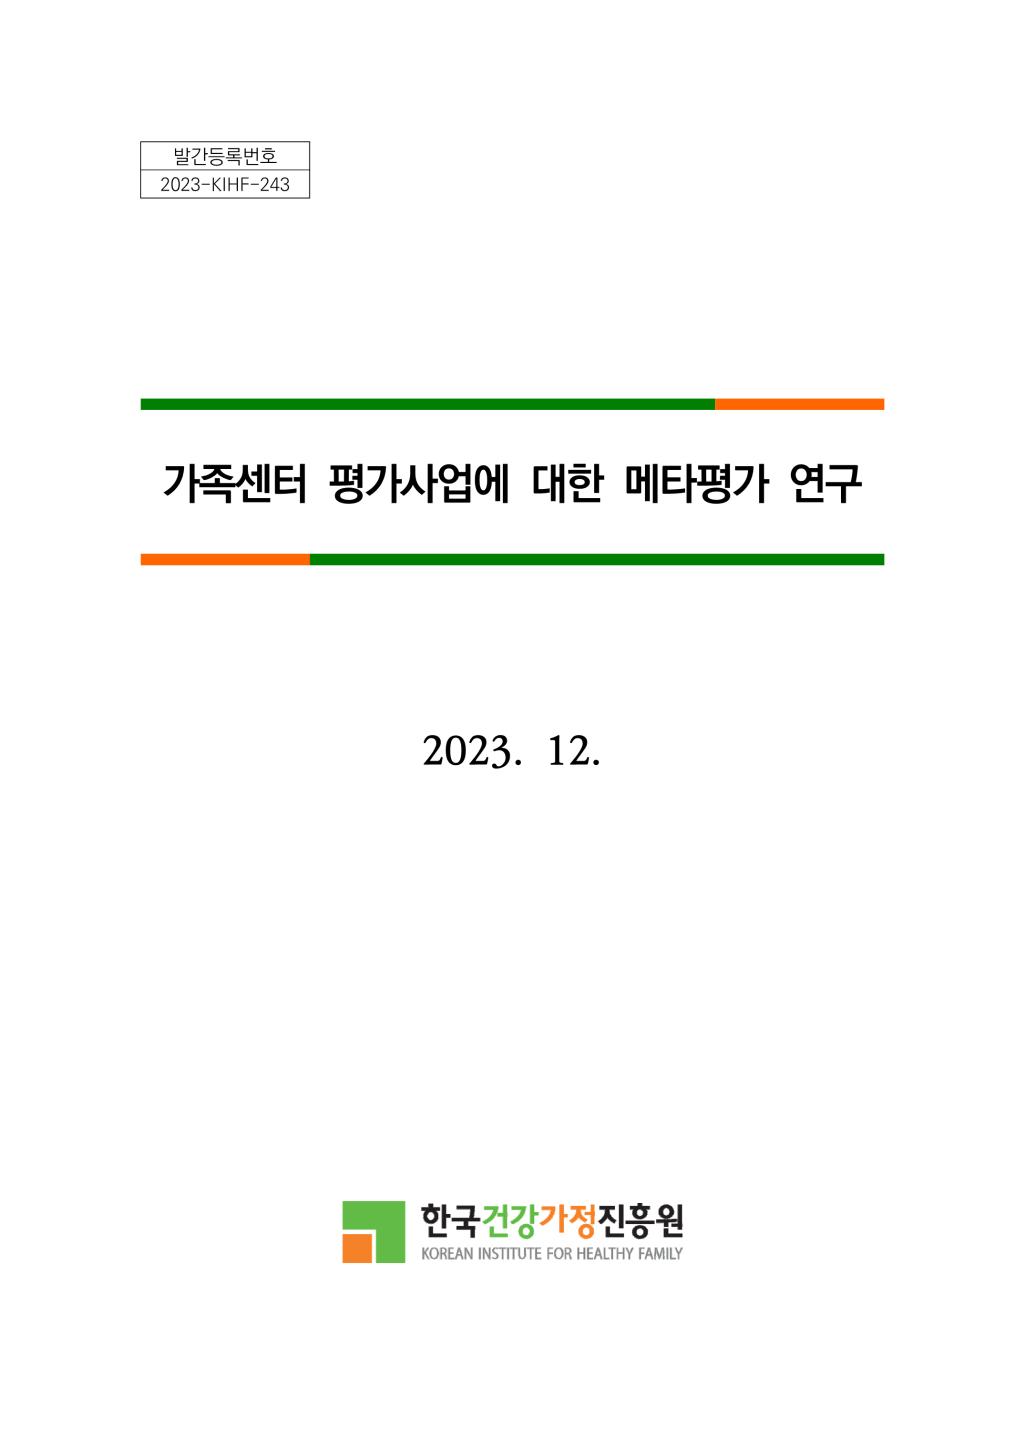 발간등록번호 2023-KIHF-243 가족센터 평가사업에 대한 메타평가 연구 2023. 12. 한국건강가정진흥원